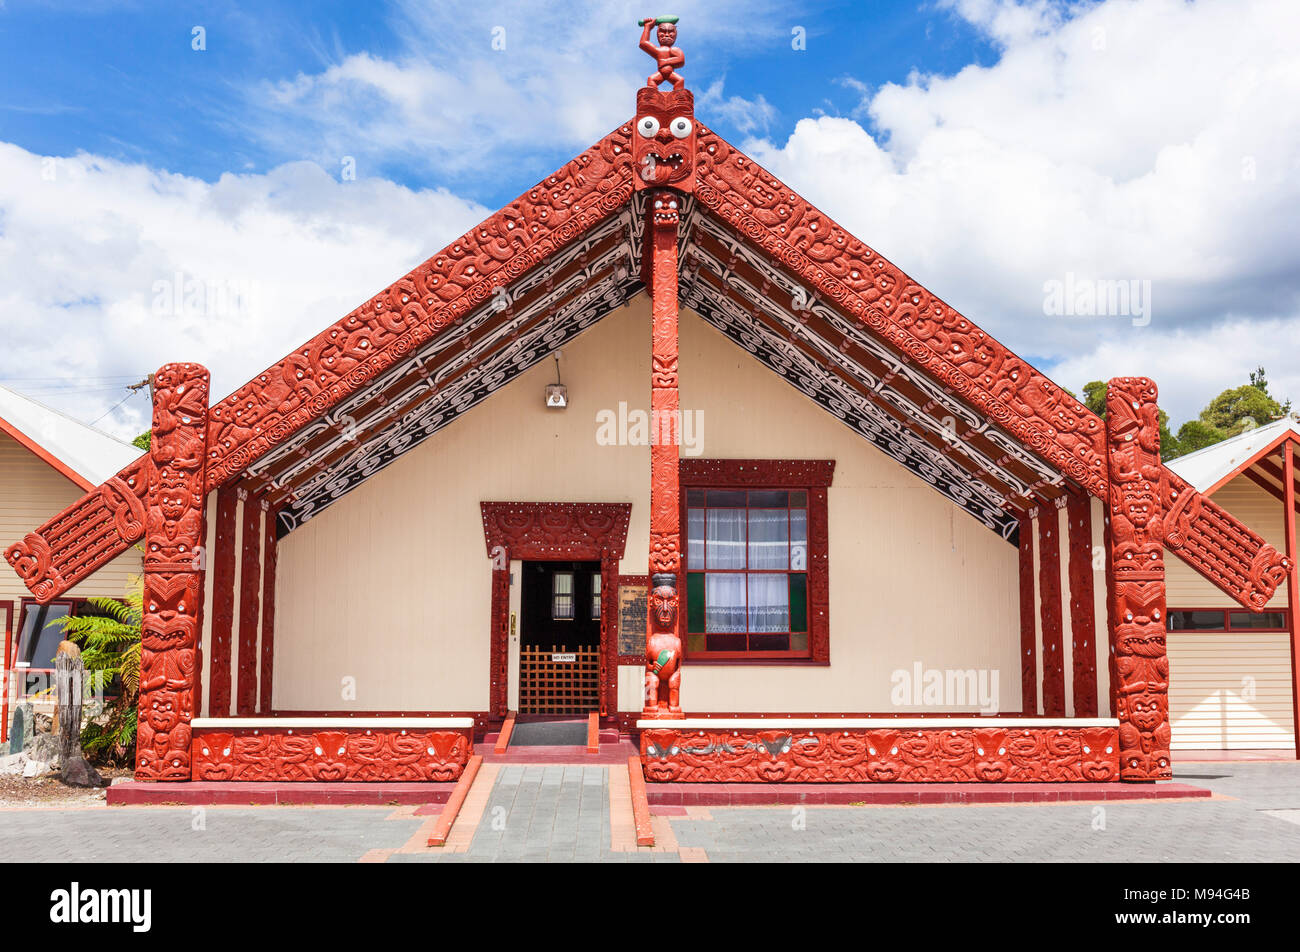 Nouvelle zélande Rotorua nouvelle zélande village thermal de Whakarewarewa rencontre wahaio house whare tipuna rotorua nouvelle zélande Ile du Nord Nouvelle Zélande Océanie Banque D'Images